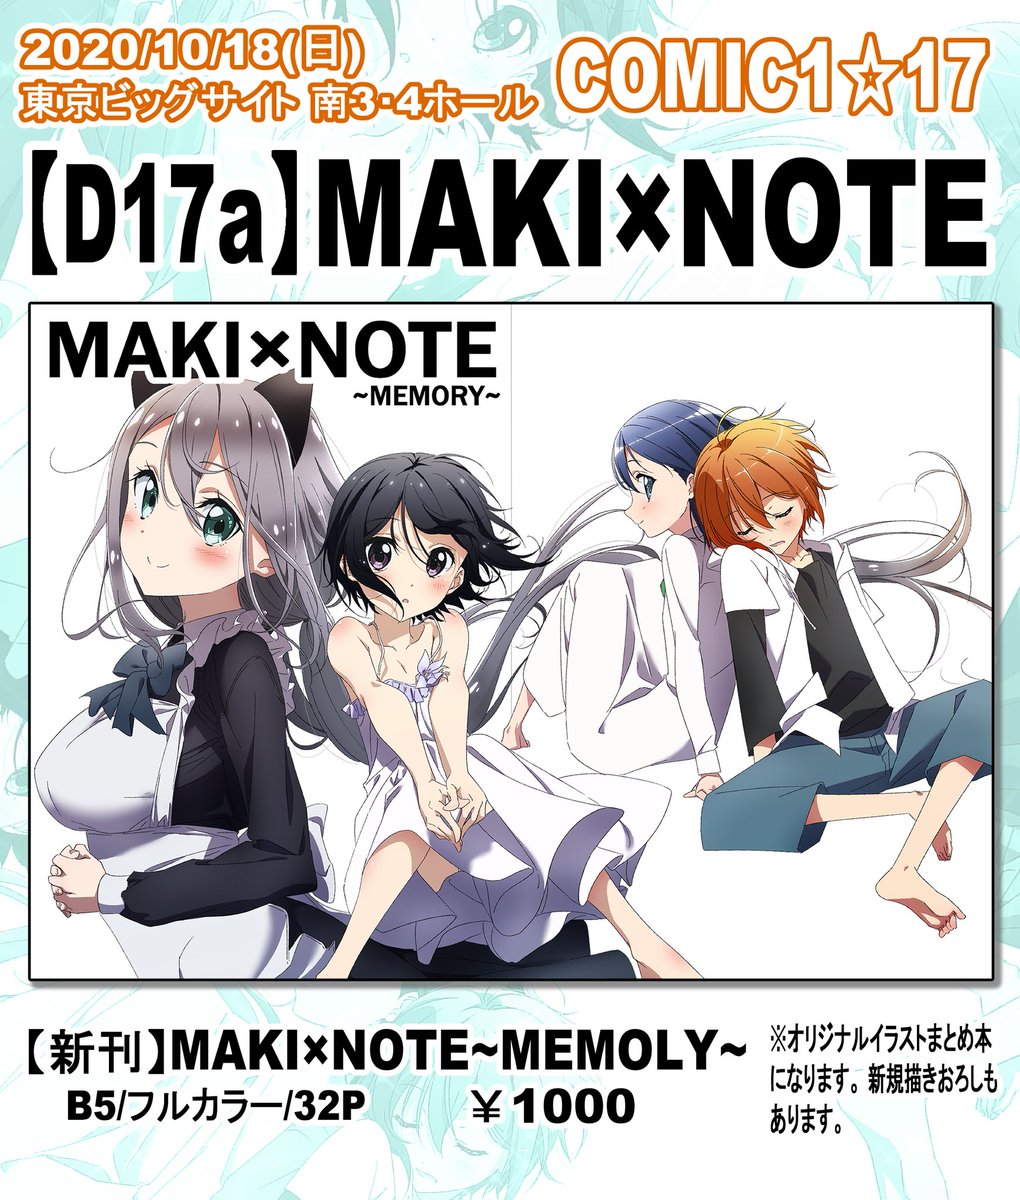 【COMIC1☆17告知】
10月18日(日) 
【D17a】『MAKI×NOTE』でサークル参加します。
新刊『MAKI×NOTE~MEMORY~』1000円
オリジナルイラスト本になります!
よろしくお願いします!( 'ω` )/ 